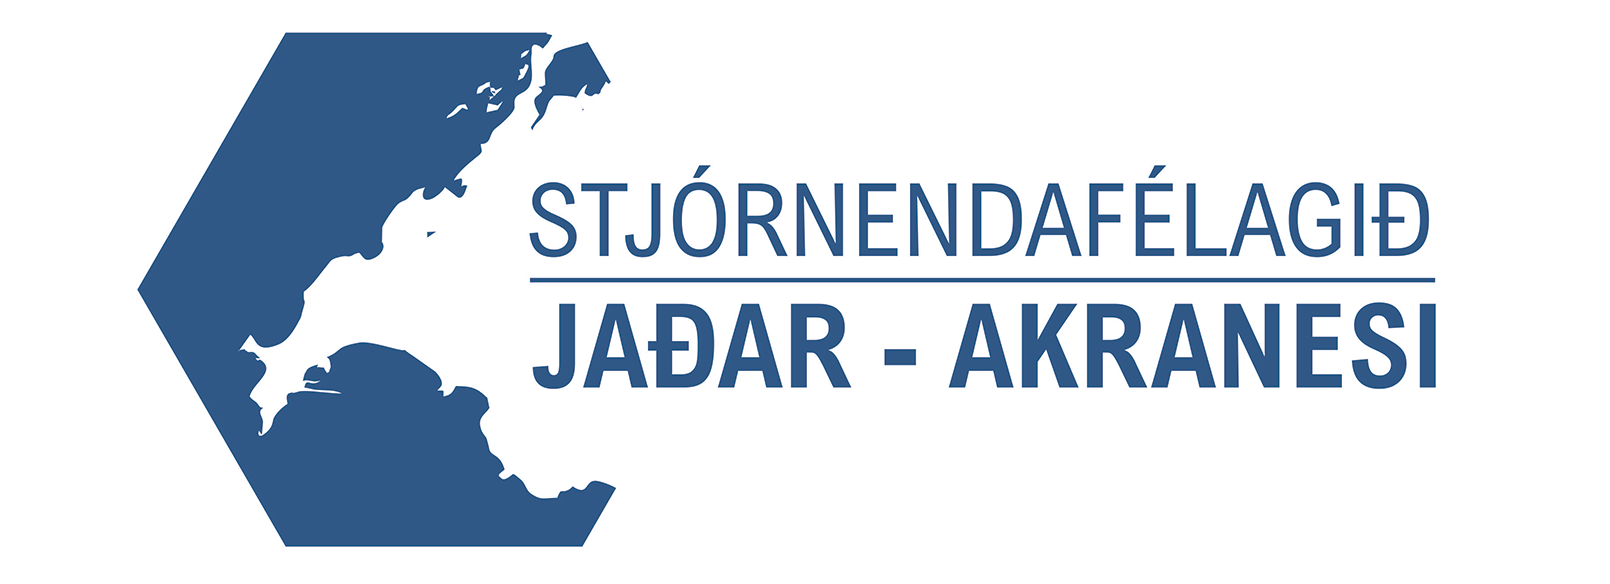 Stjórnendafélagið Jaðar